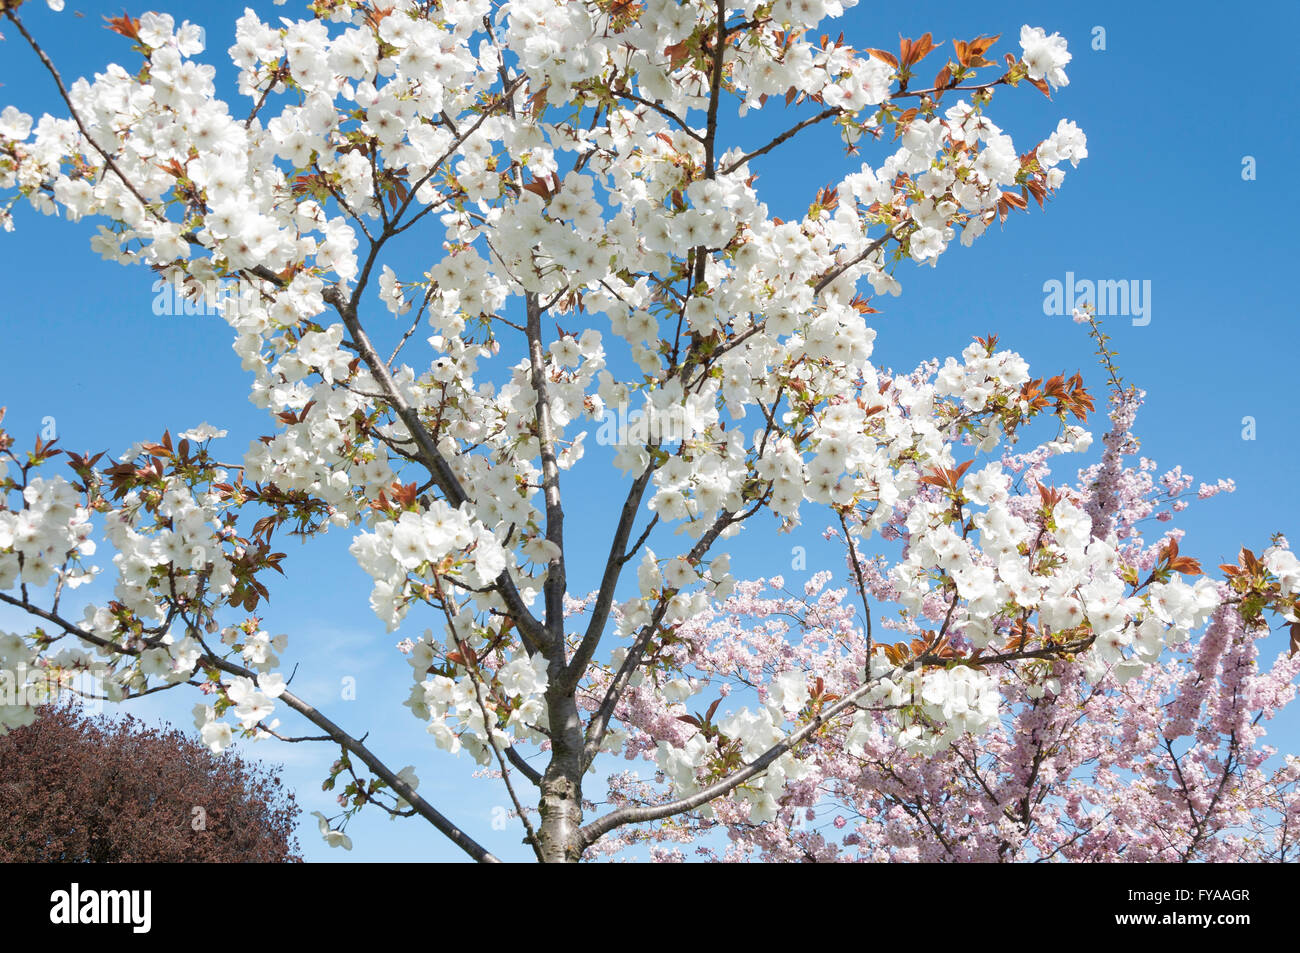 Fleur de printemps de l'Alexandra Park, London Borough of Haringey, Greater London, Angleterre, Royaume-Uni Banque D'Images